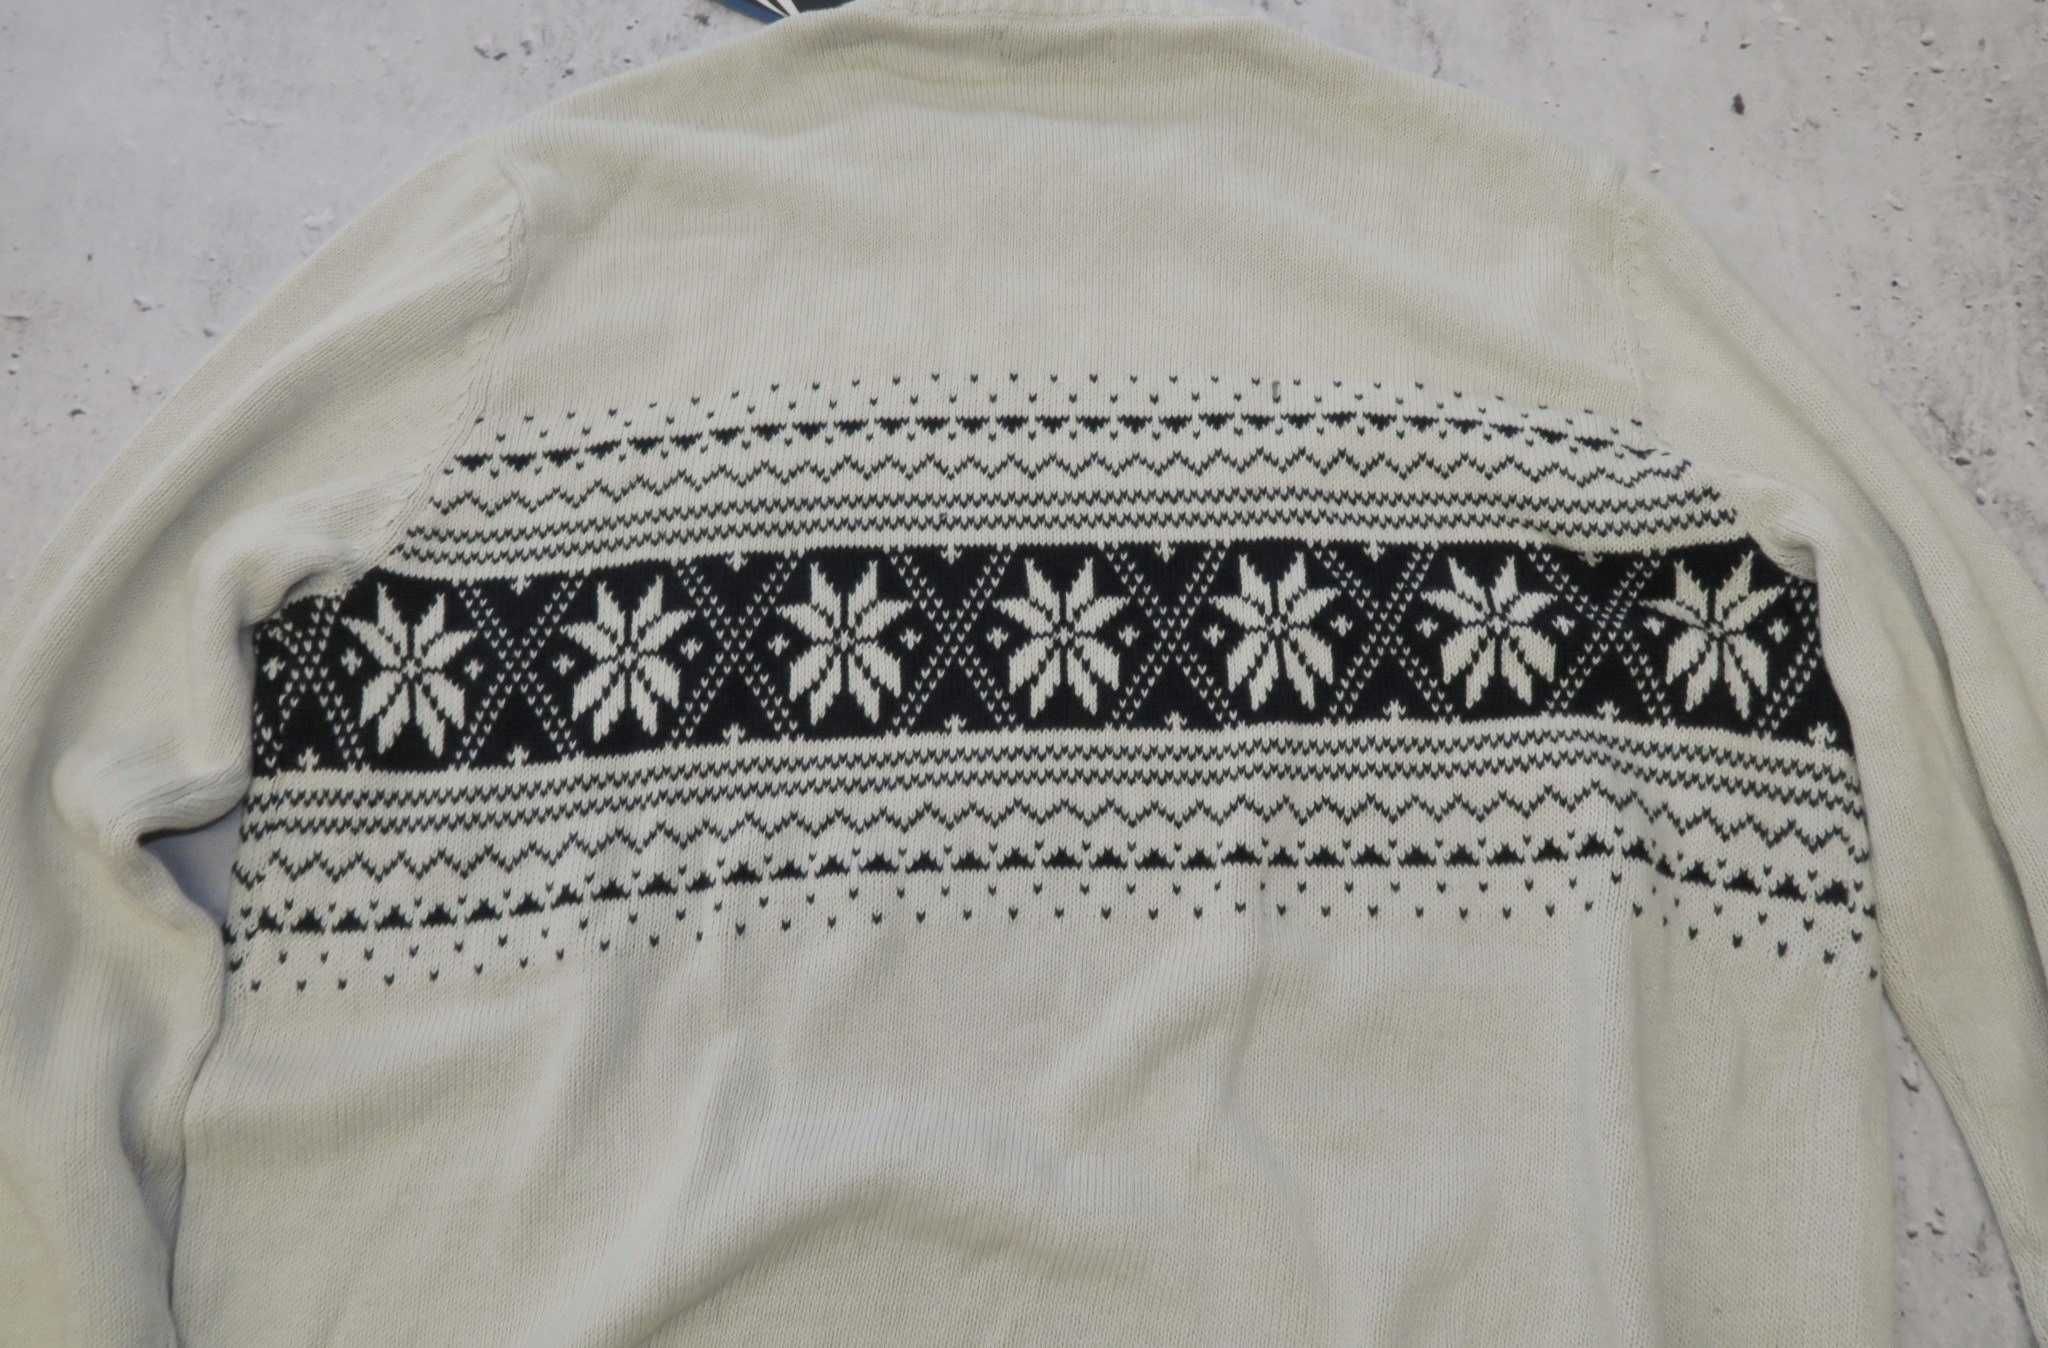 Nautica sweter w świąteczne wzory nowy L